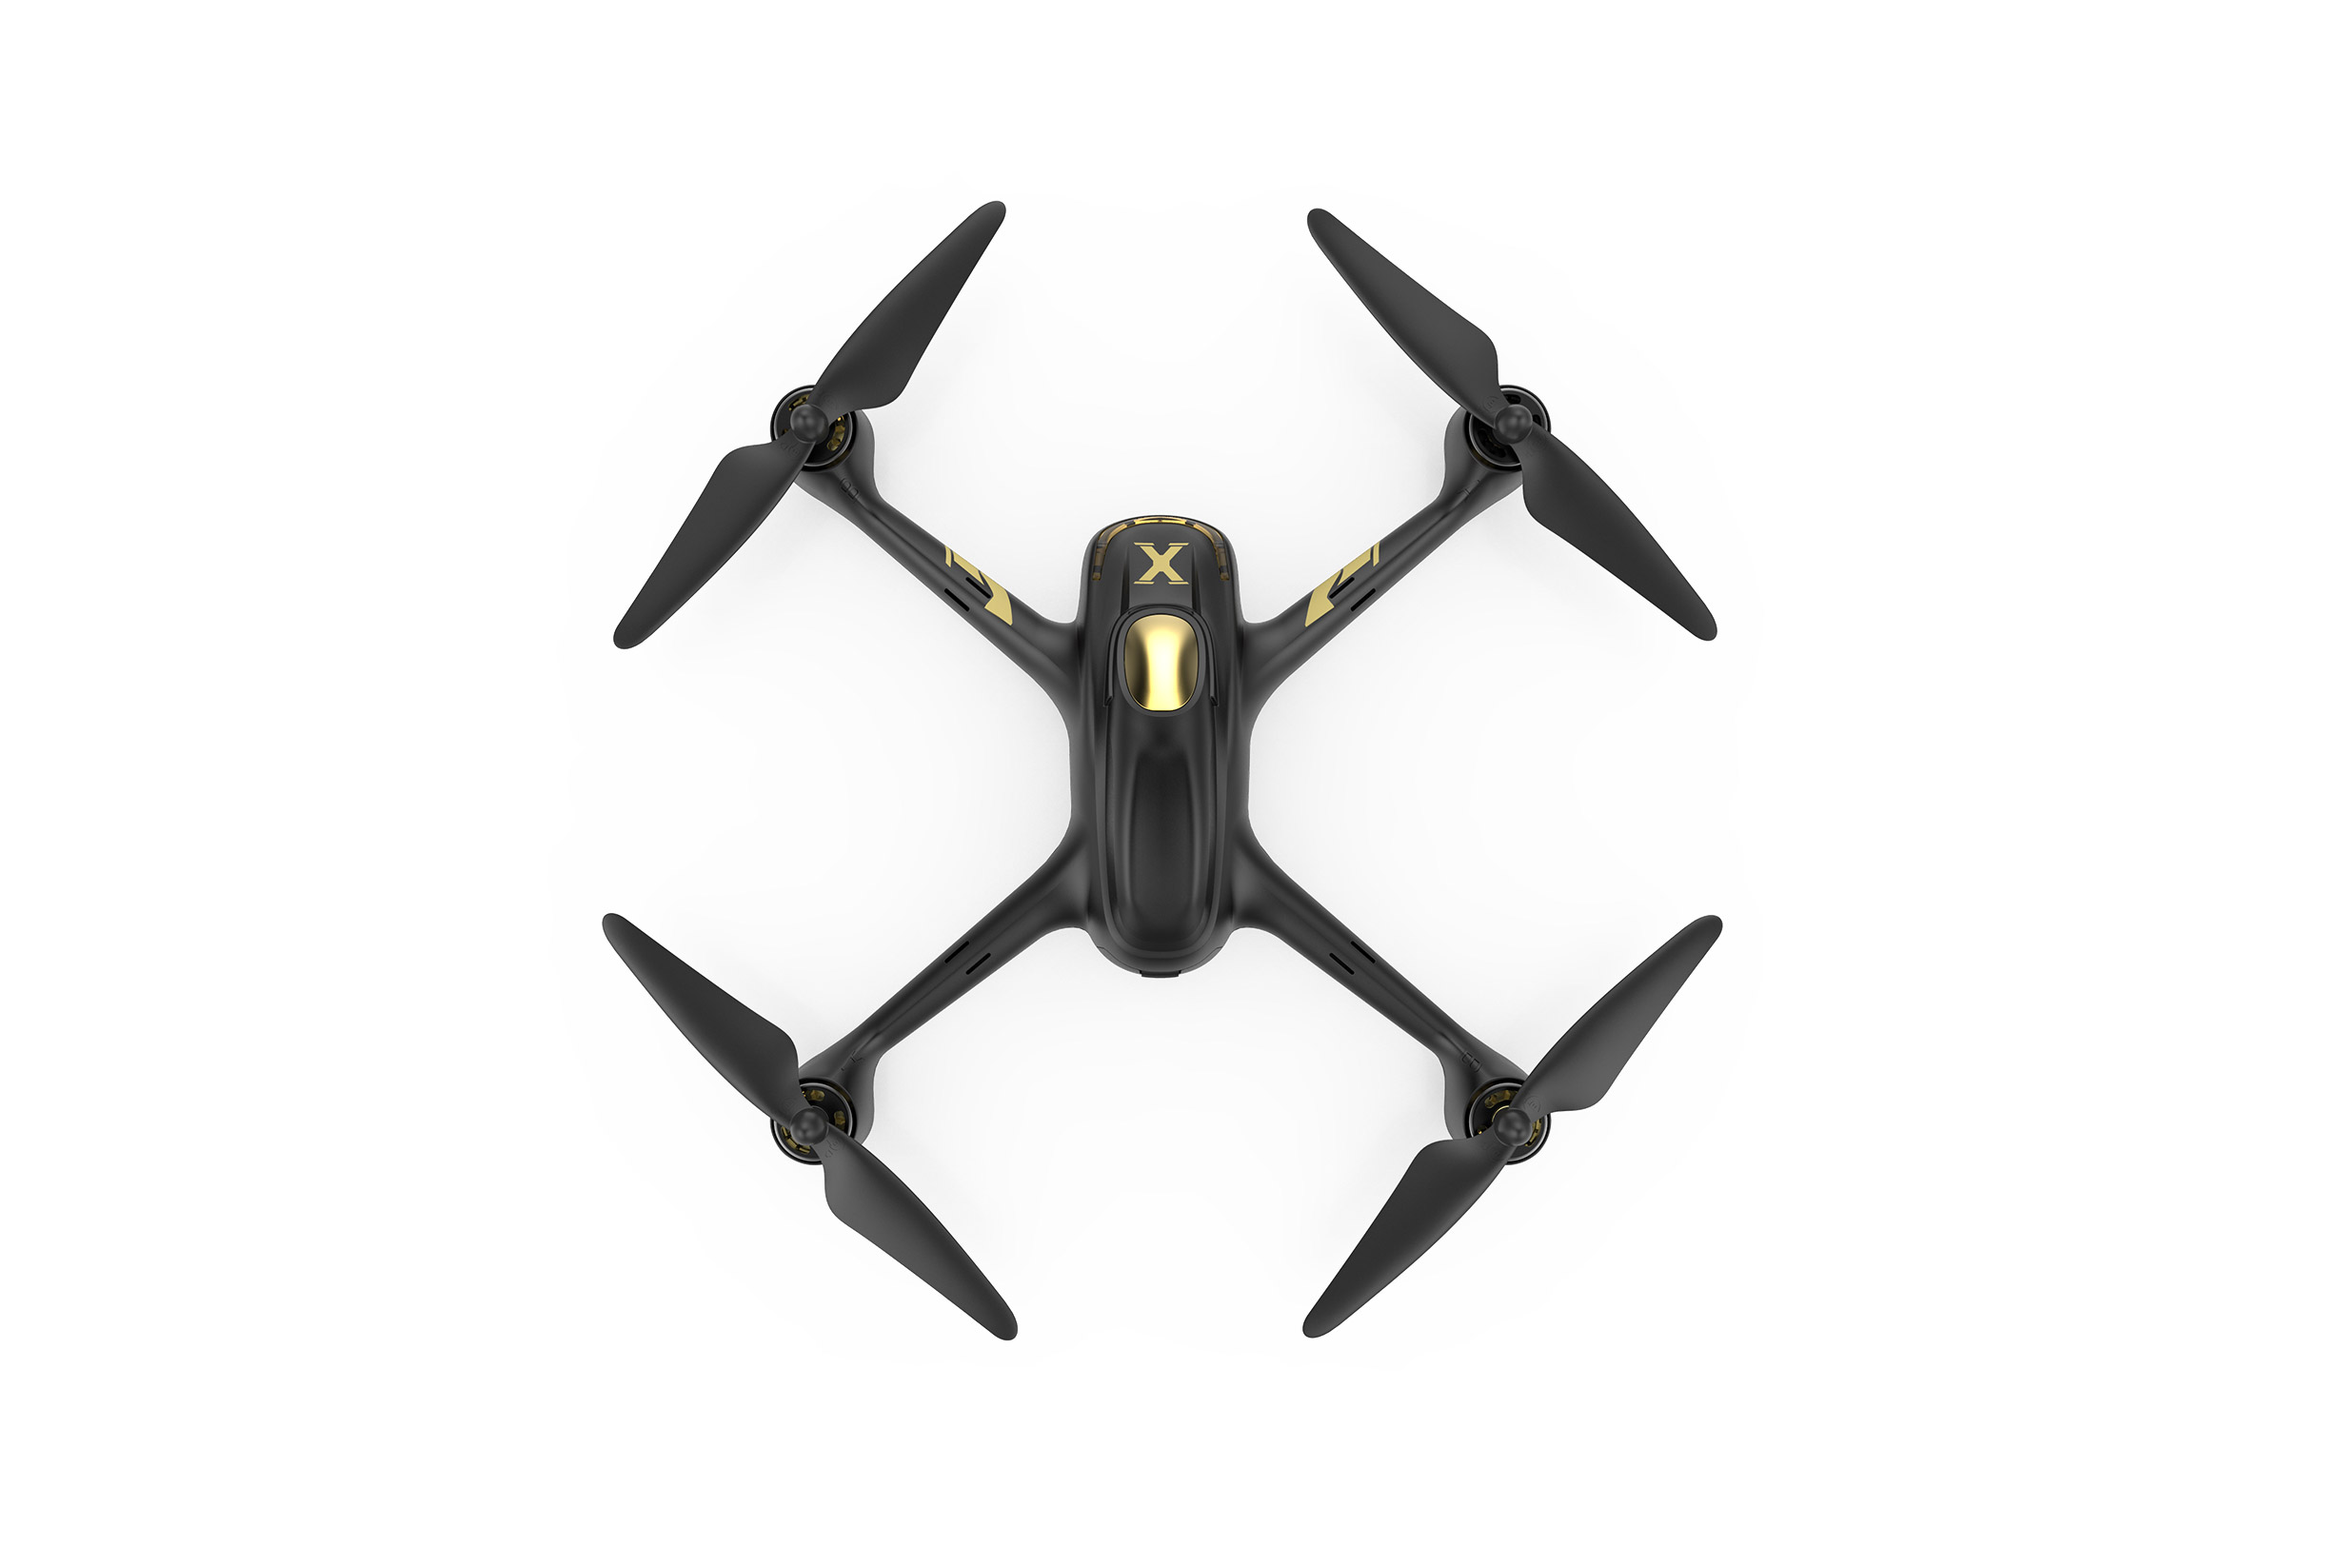 RTF-Drohne mit App-Steuerung Hubsan X4 Star Pro Quadrocopter GPS, HD-Kamera 